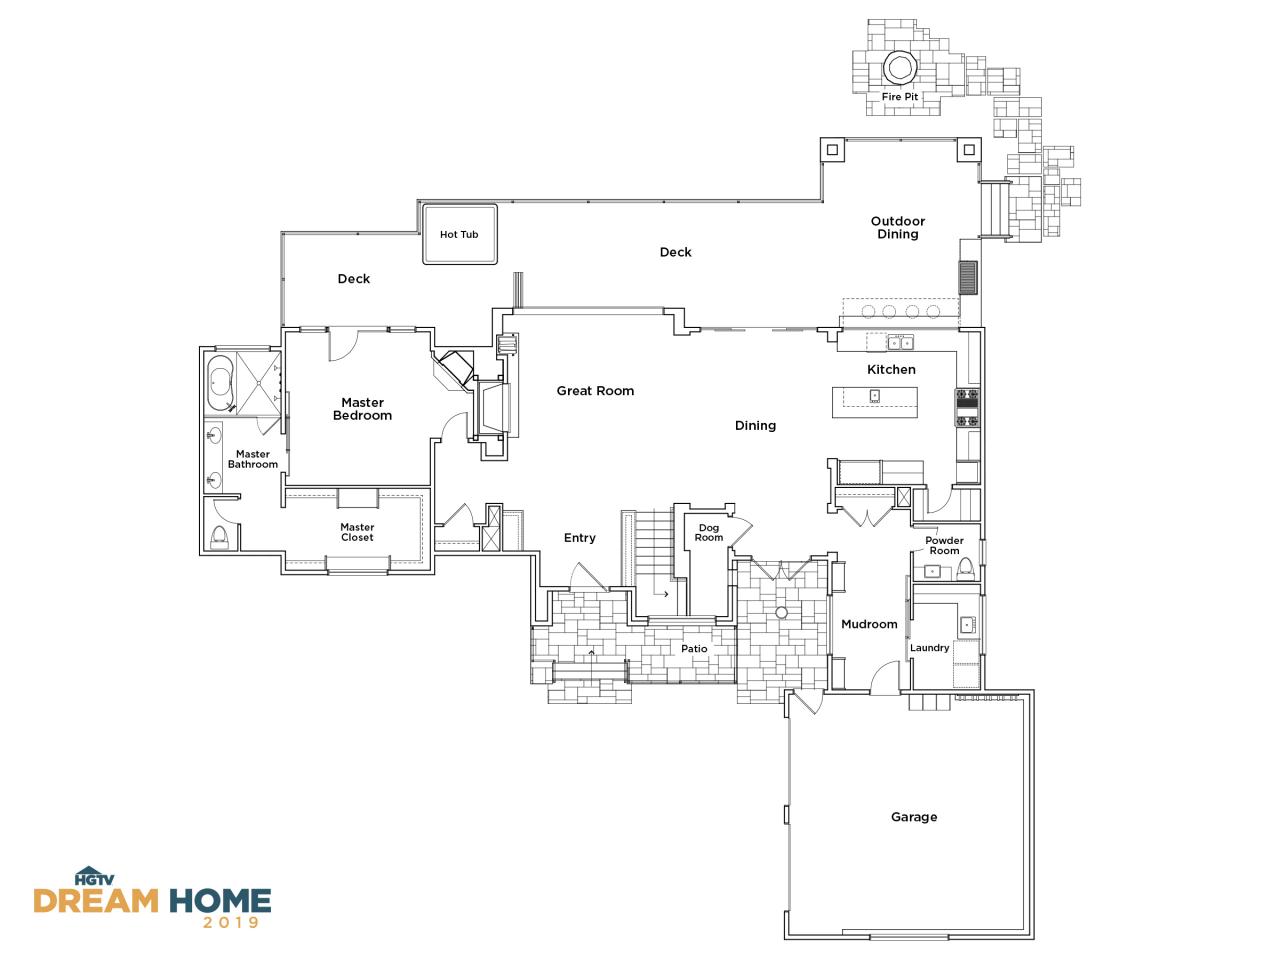 Discover the Floor Plan for HGTV Dream Home 2019 HGTV